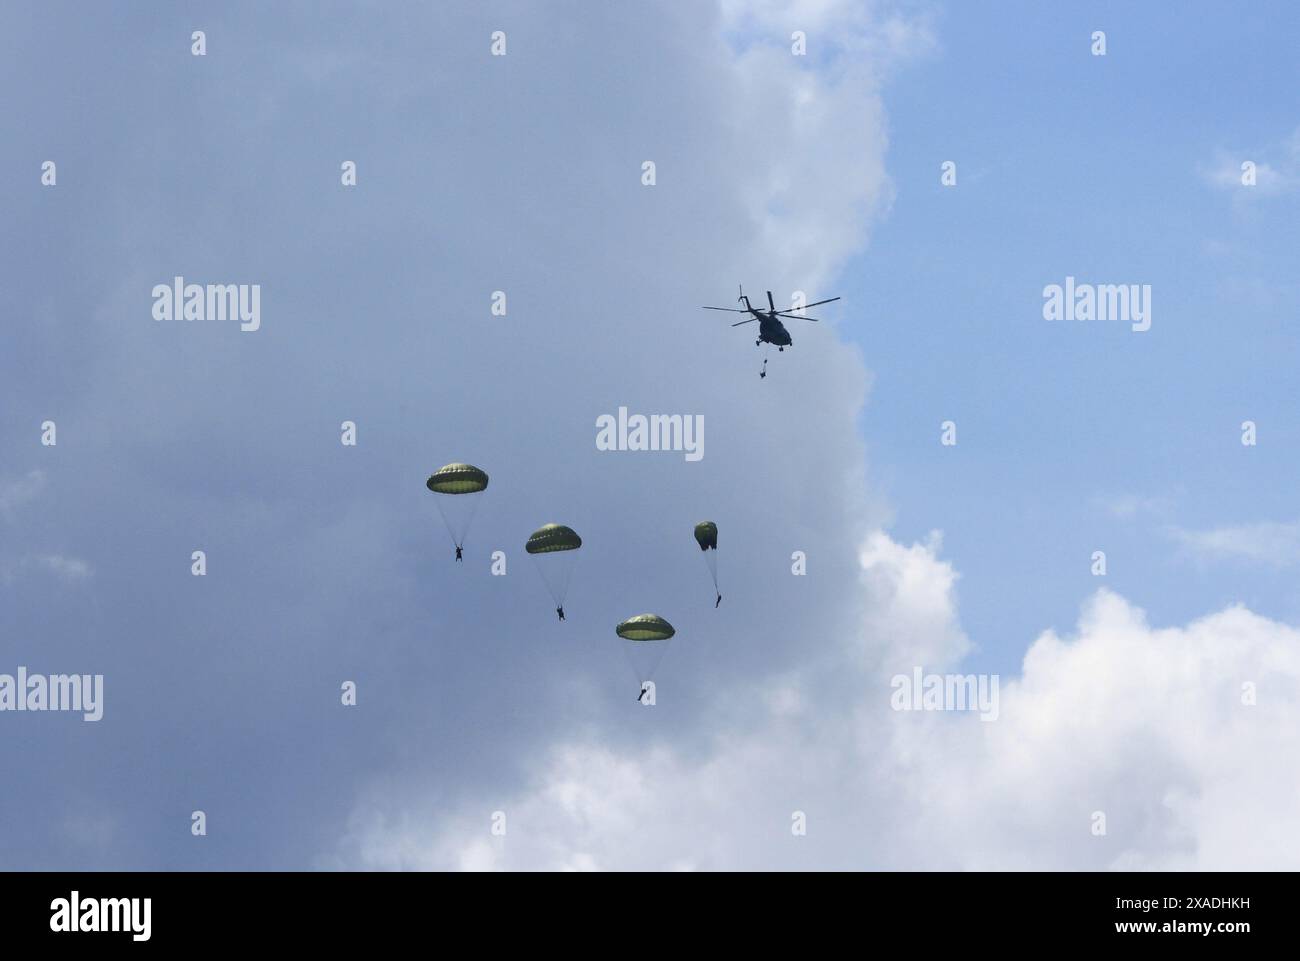 Cinque paracadutisti militari che saltano da un elicottero contro nuvole drammatiche, un paracadute si sta svolgendo, uno sta cadendo dall'elicottero Foto Stock